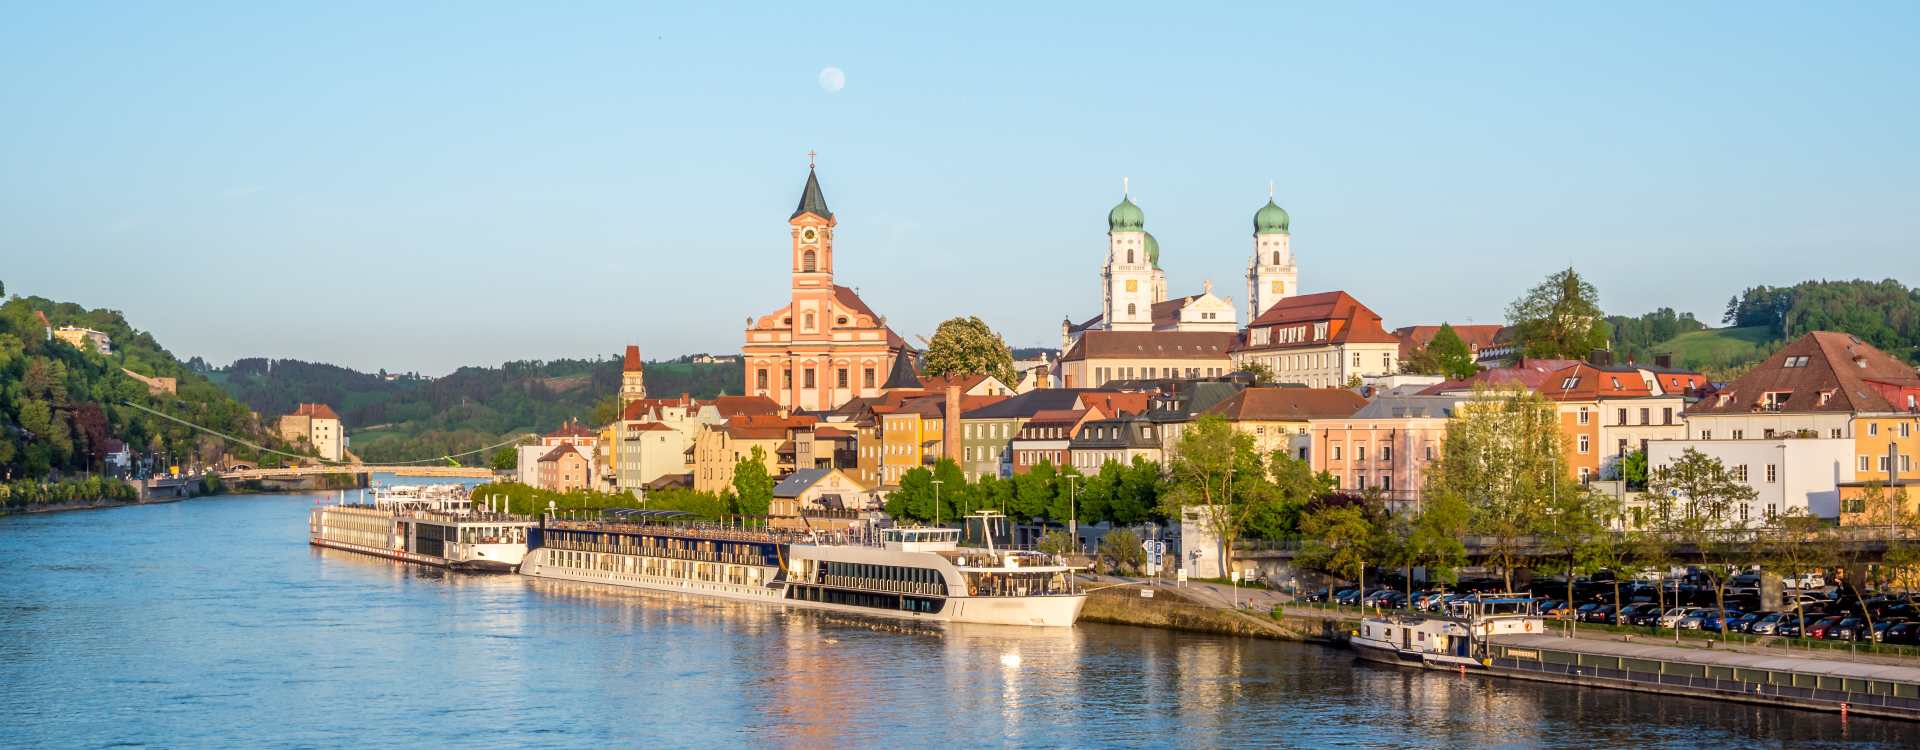 Stadtansicht von Passau mit der Donaupromenade